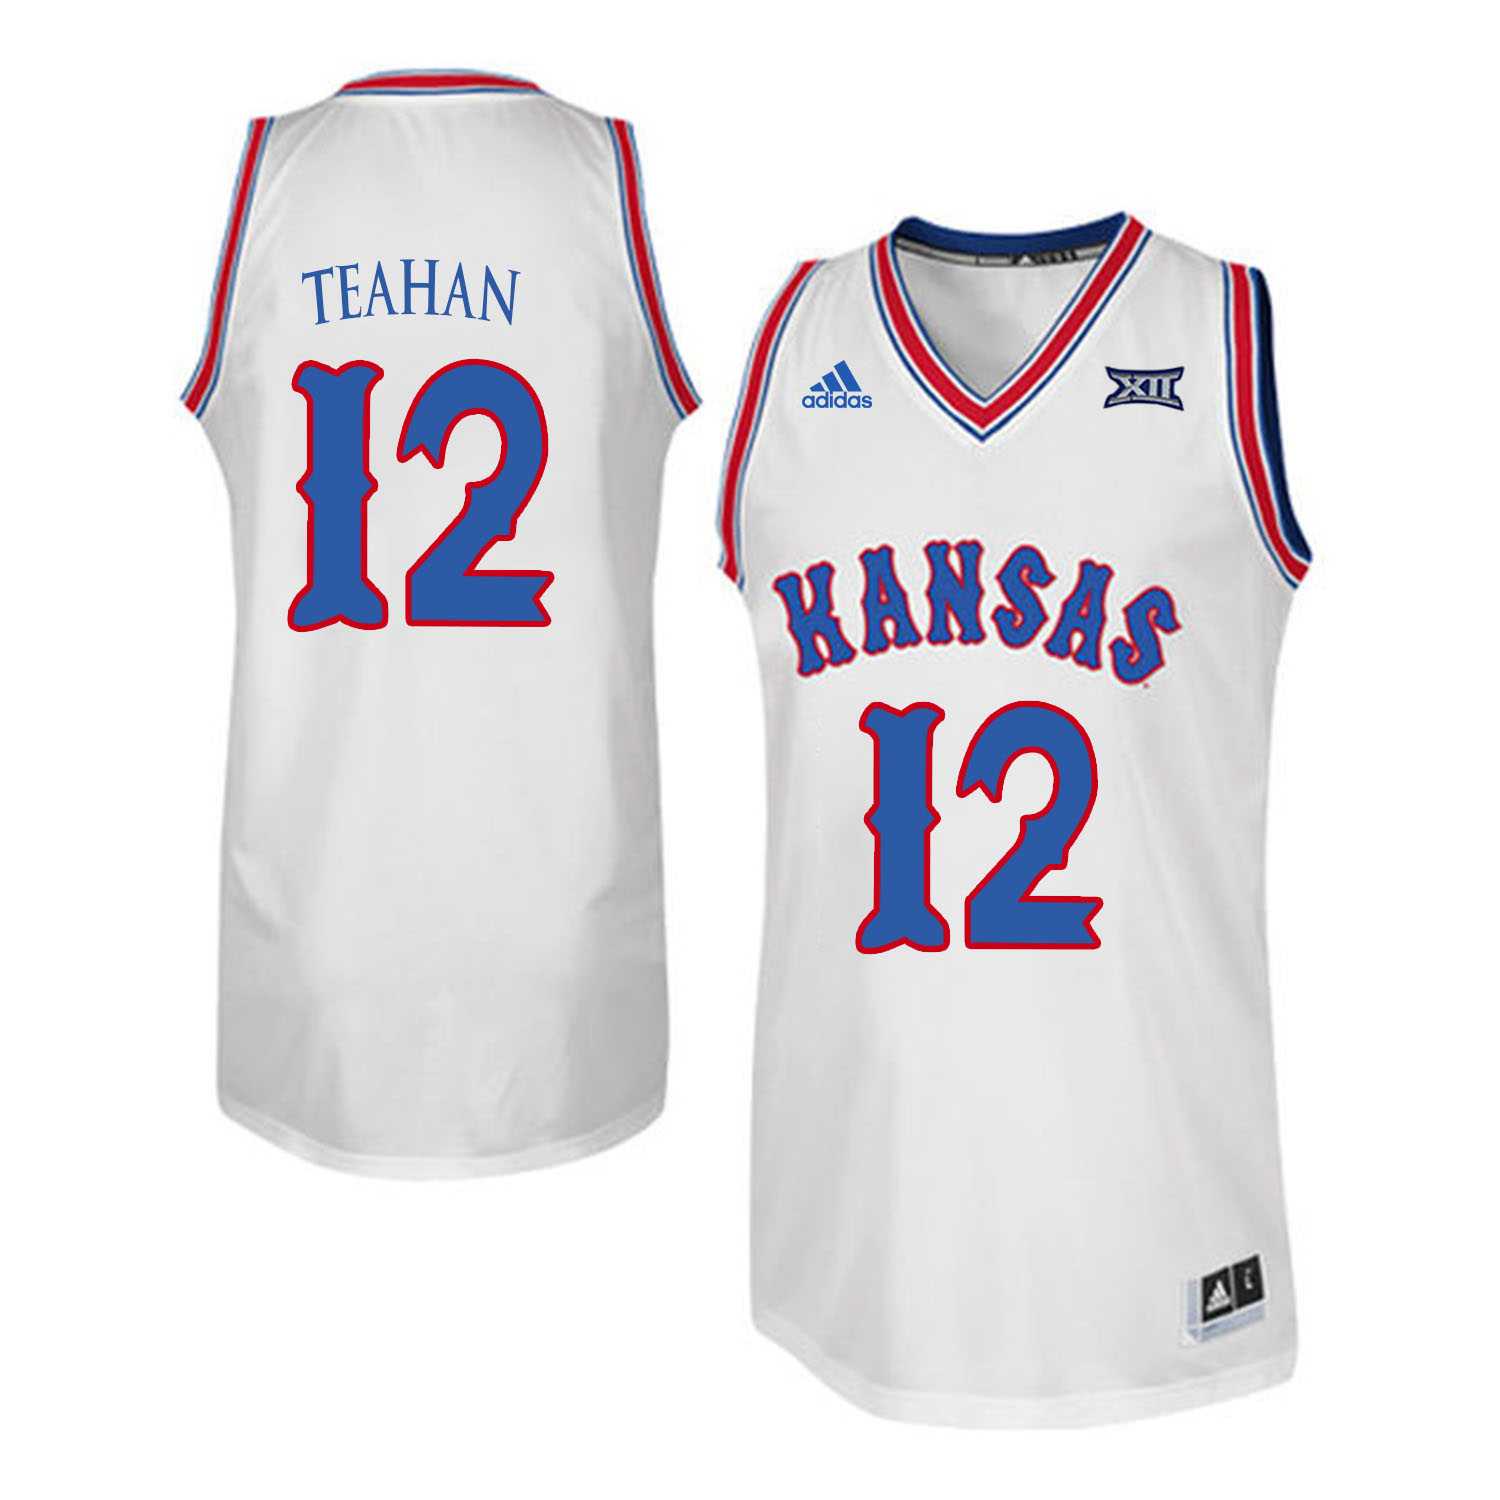 Kansas Jayhawks 12 Chris Teahan White Throwback College Basketball Jersey Dzhi